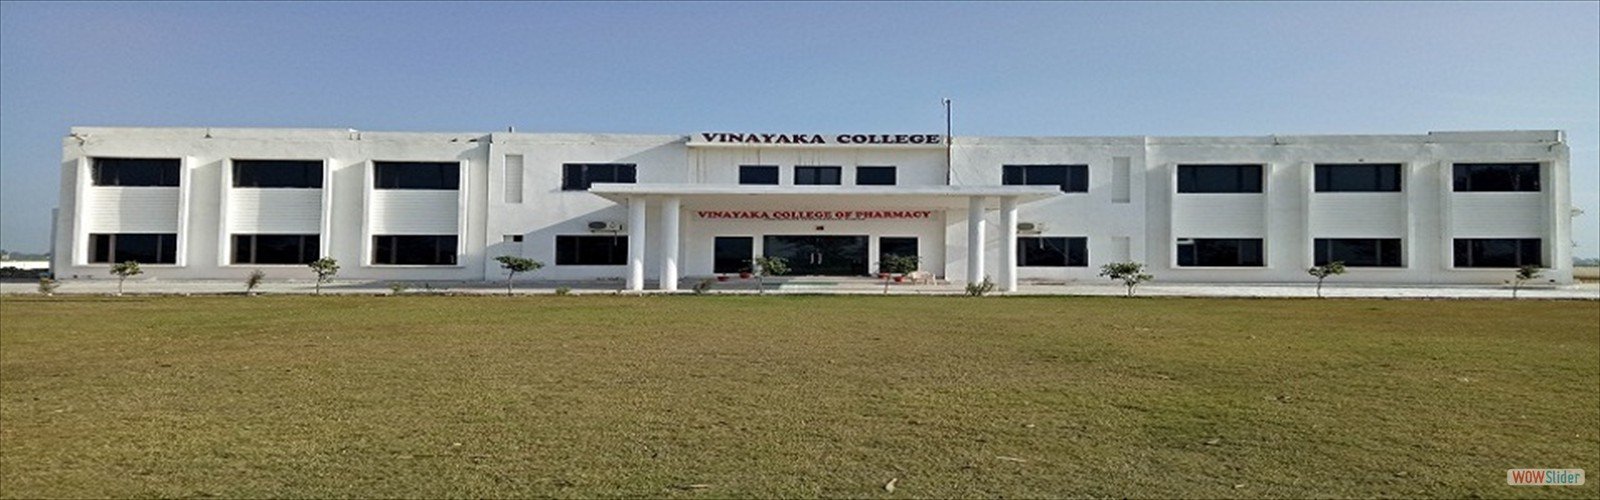 Vinayaka College of Pharmacy